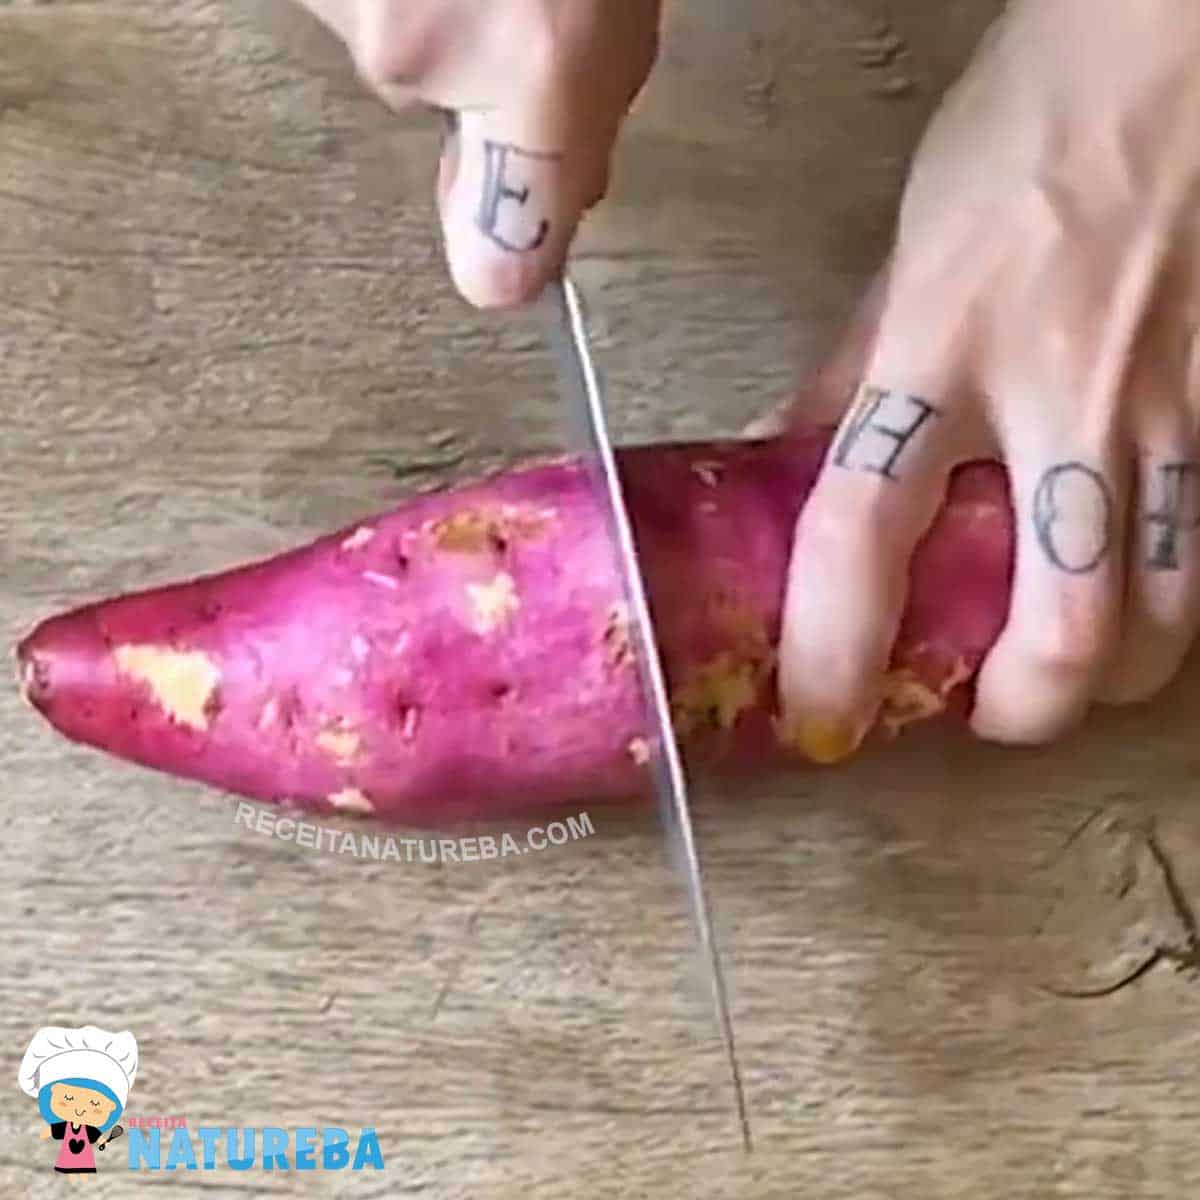 cortando a batata doce